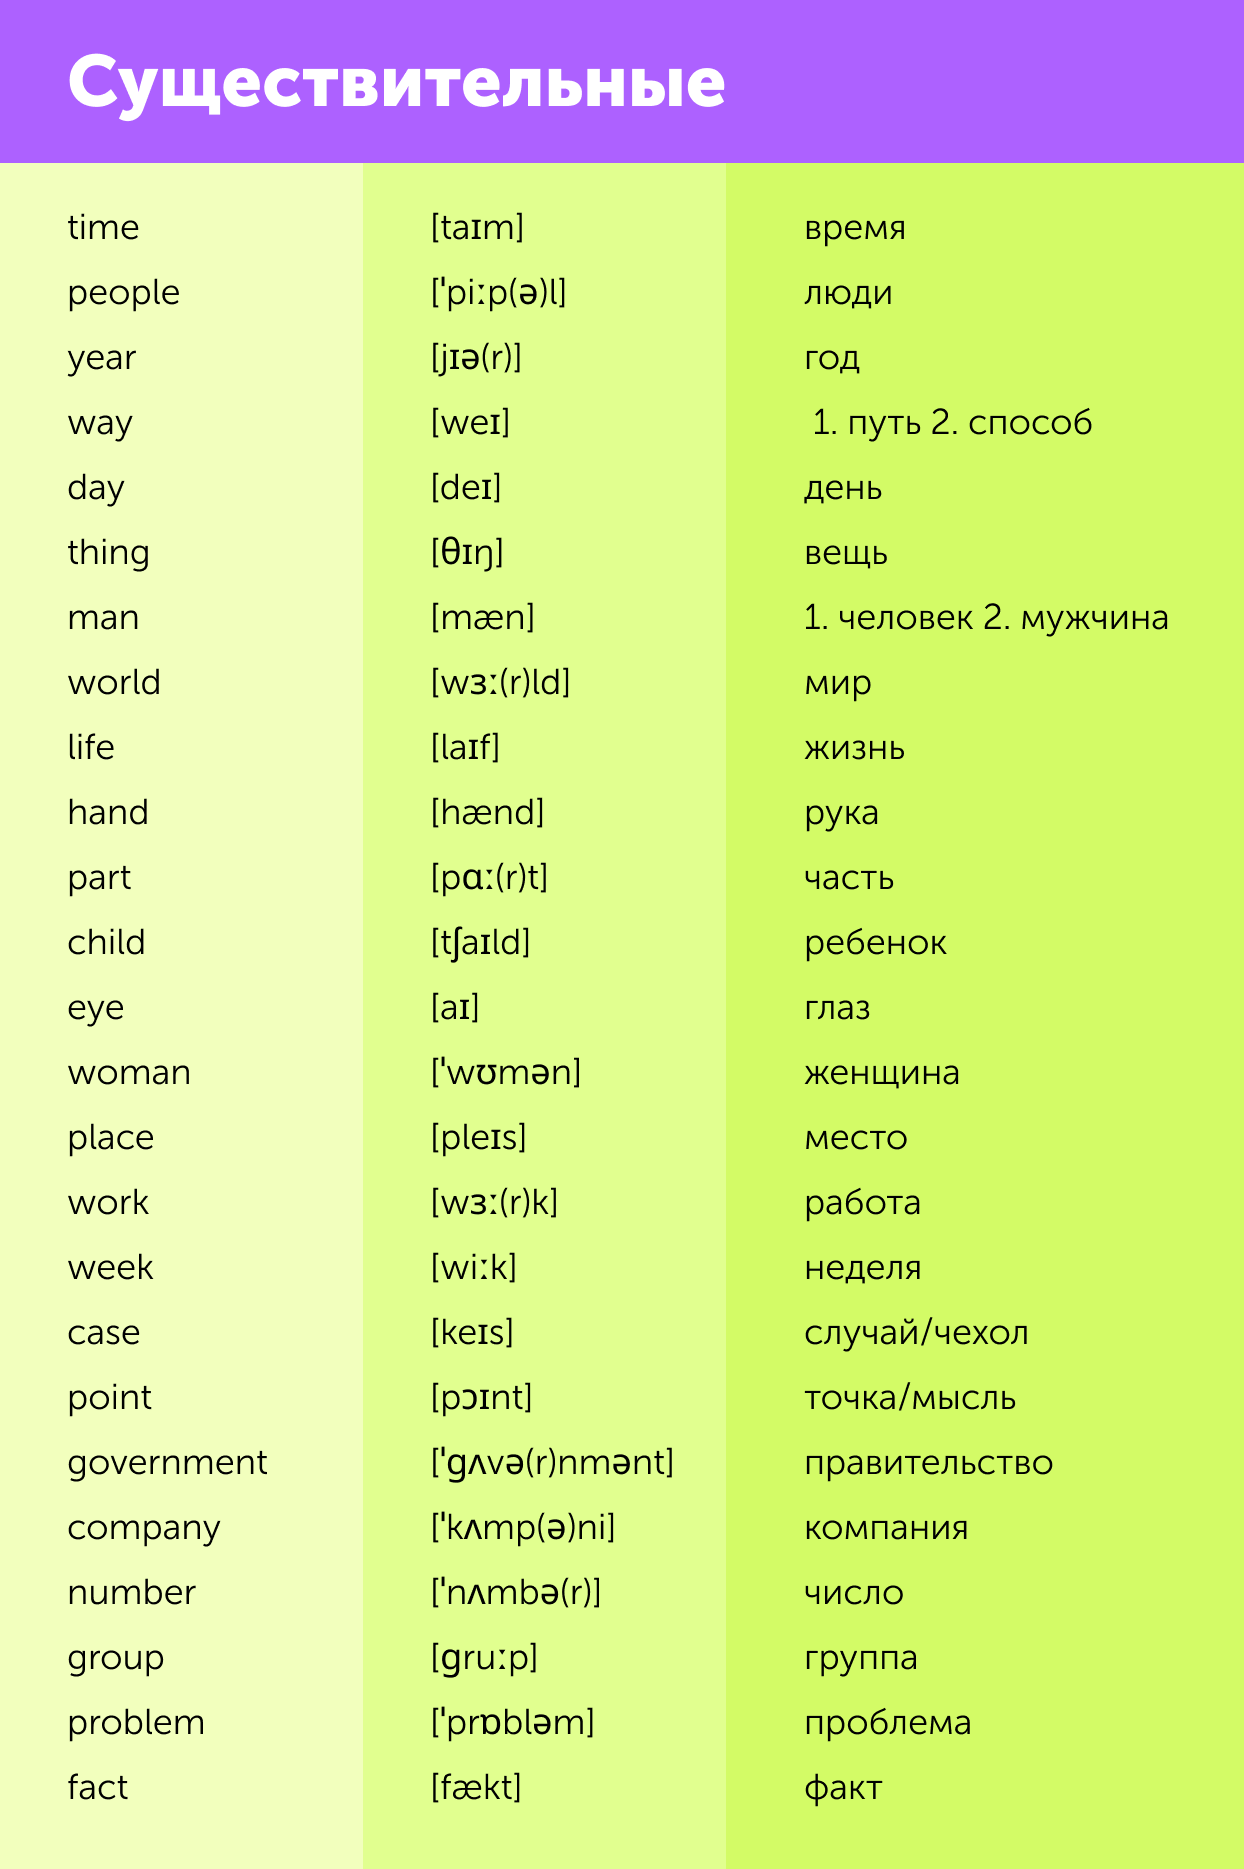 114 английских слов, которые пригодятся вам хоть раз. С транскрипцией и переводом